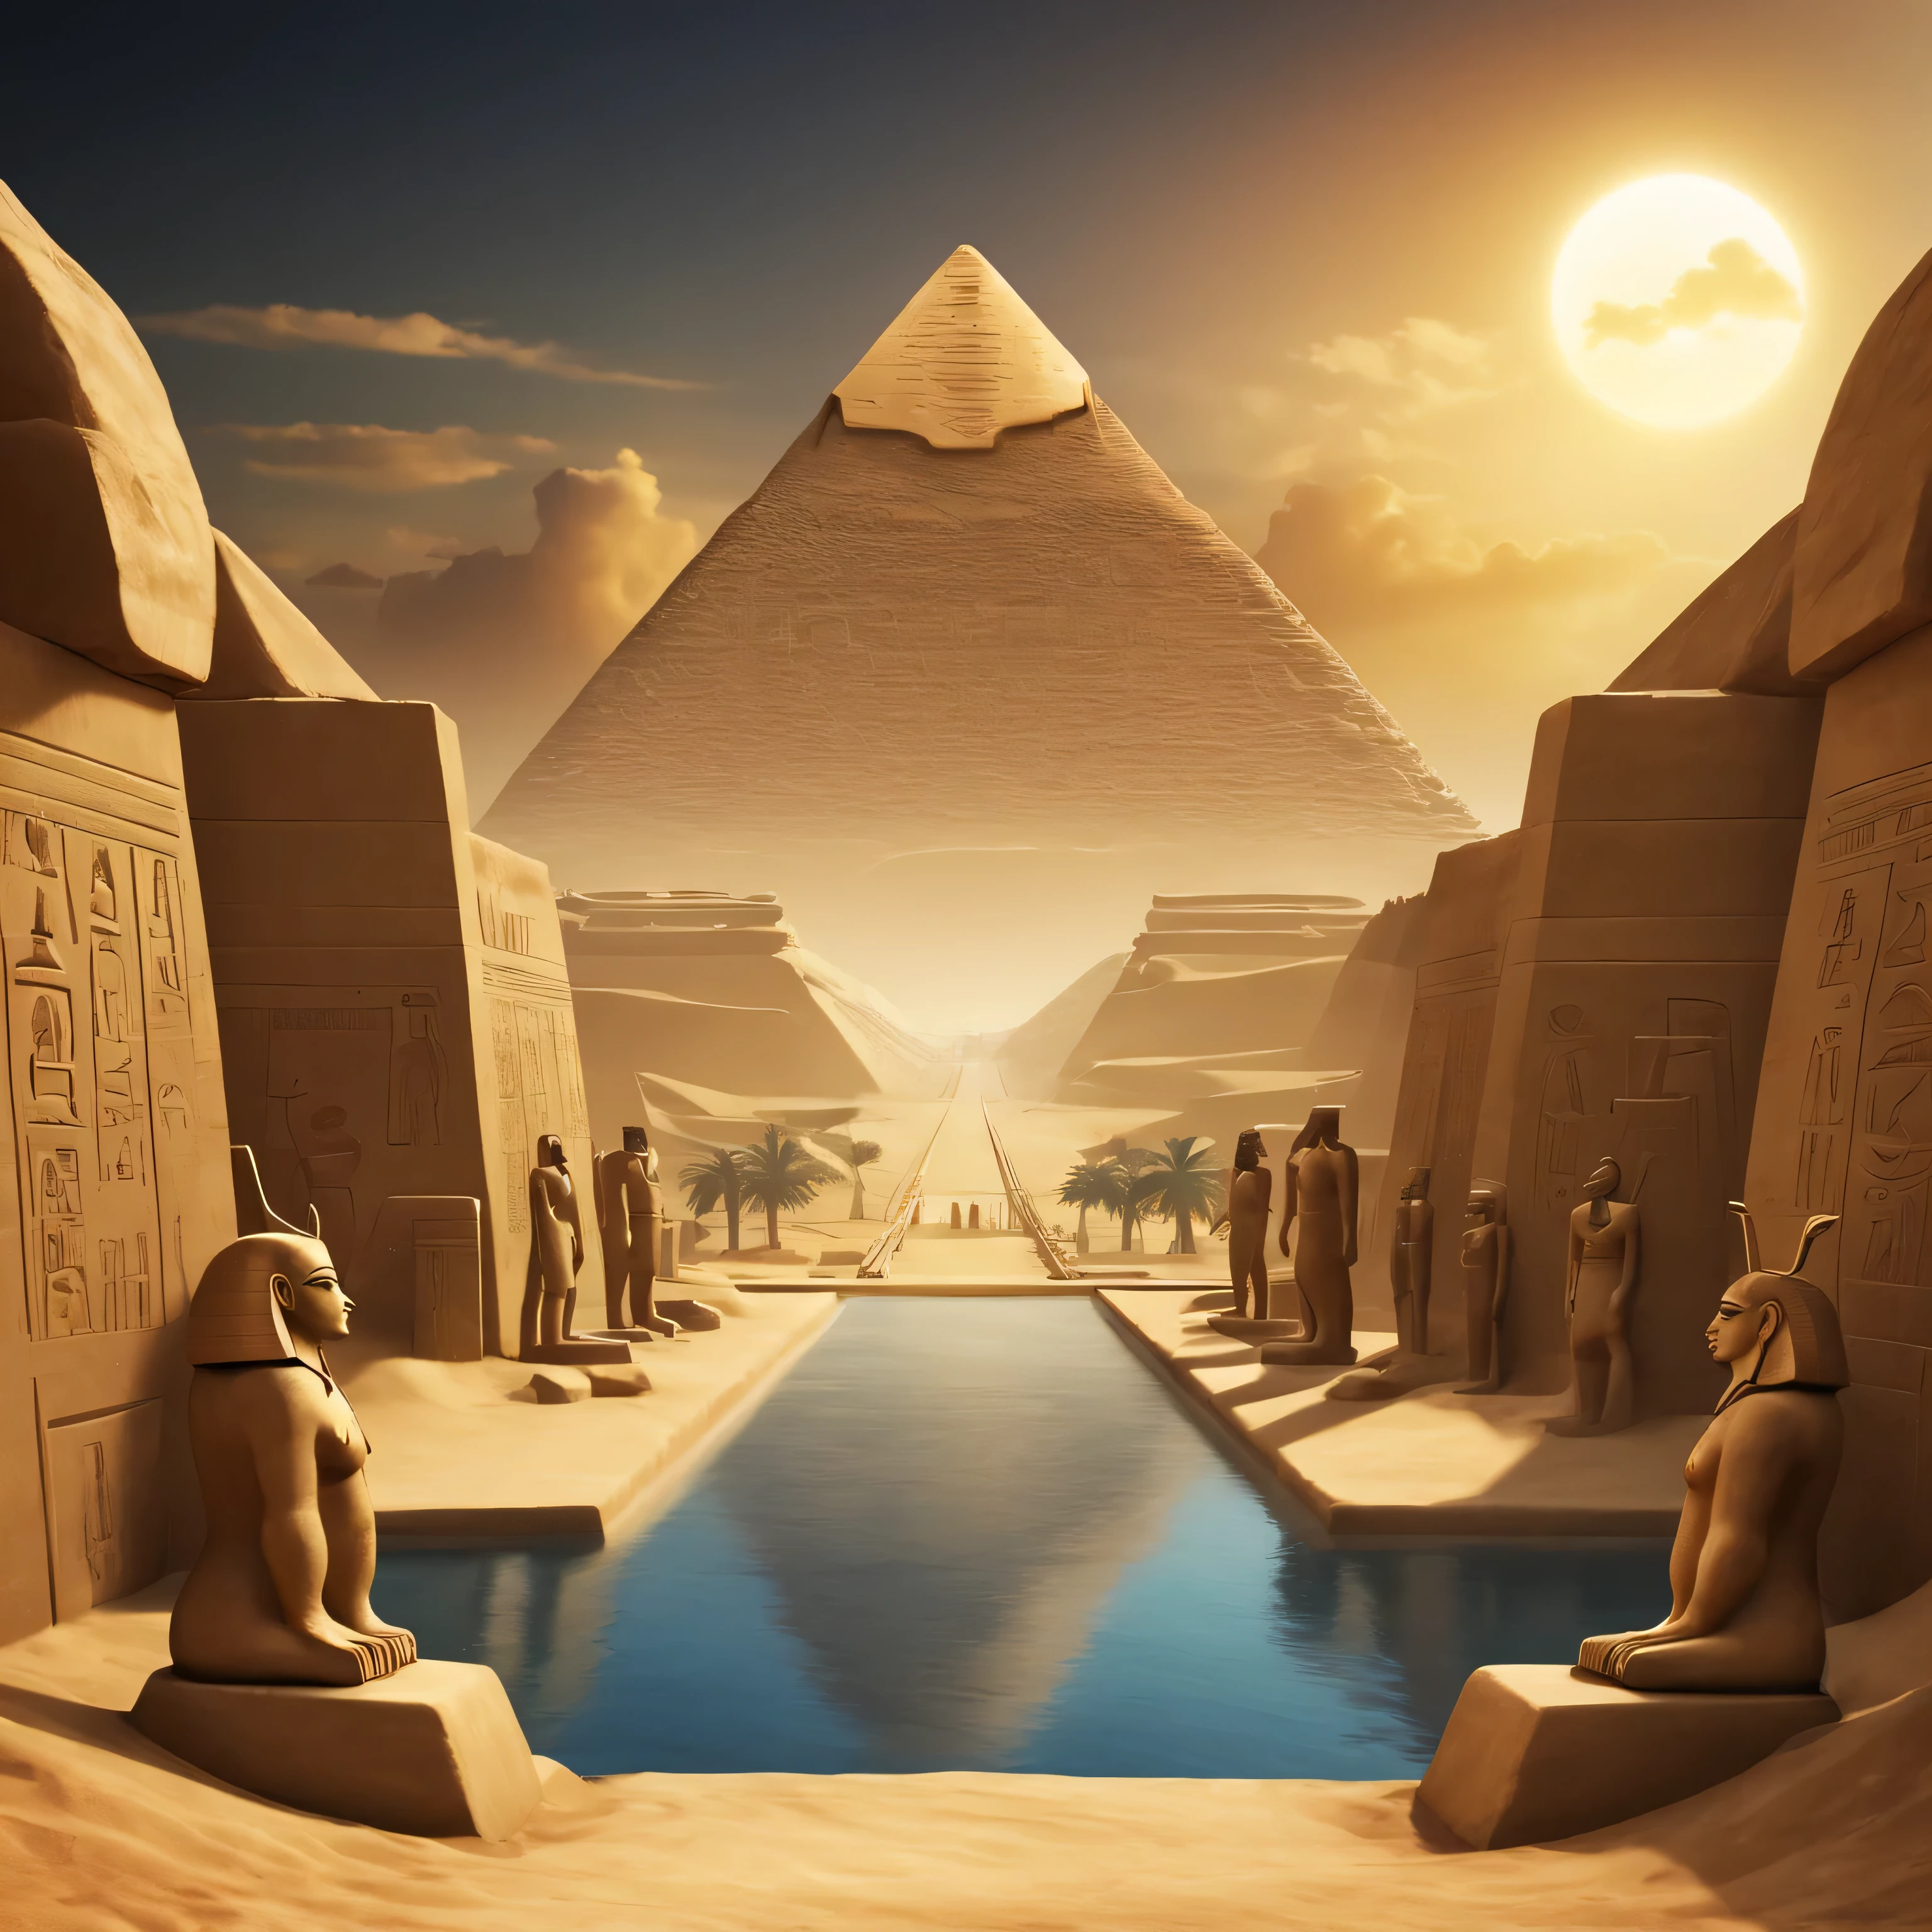 Eine Landschaft, in der alle Hauptgötter des alten Ägypten am Horizont sichtbar sind. Im Hintergrund und an den Rändern sollten Symbole und Formen verwendet werden, die spezifisch für das alte Ägypten sind.. mindestens 4 Götter...